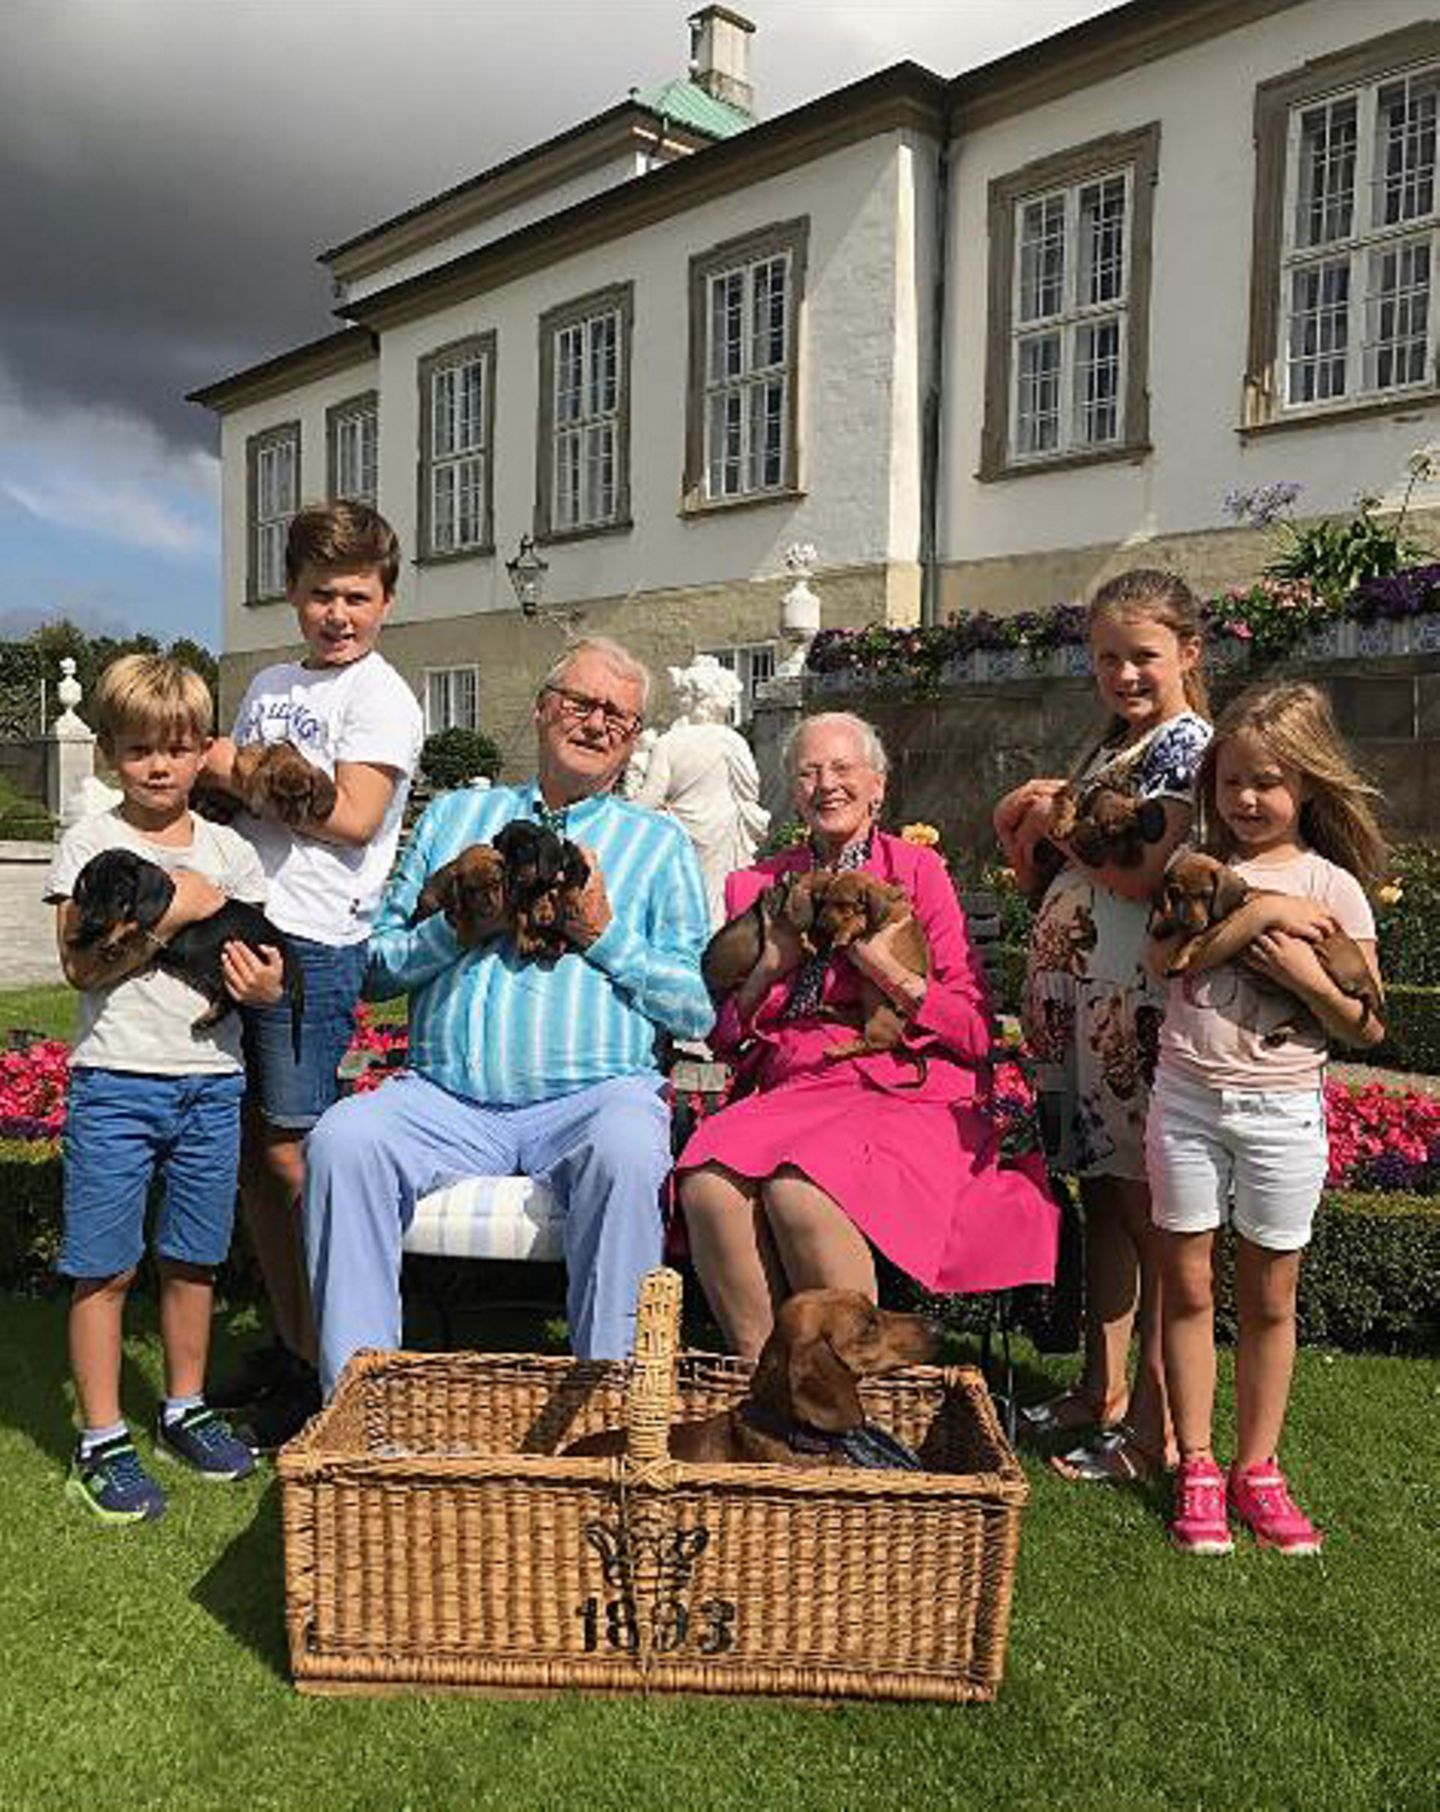 Die Liebe zum Hund ist im dänischen Königshaus generationsübergreifend. Als Prinz Henriks Hündin (vorne im Korb) Welpen bekommt, dürfen die vier Enkel mit Welpen in die Kamera halten. Schließlich sollen sich alle mit über den vierbeinigen Nachwuchs freuen können.